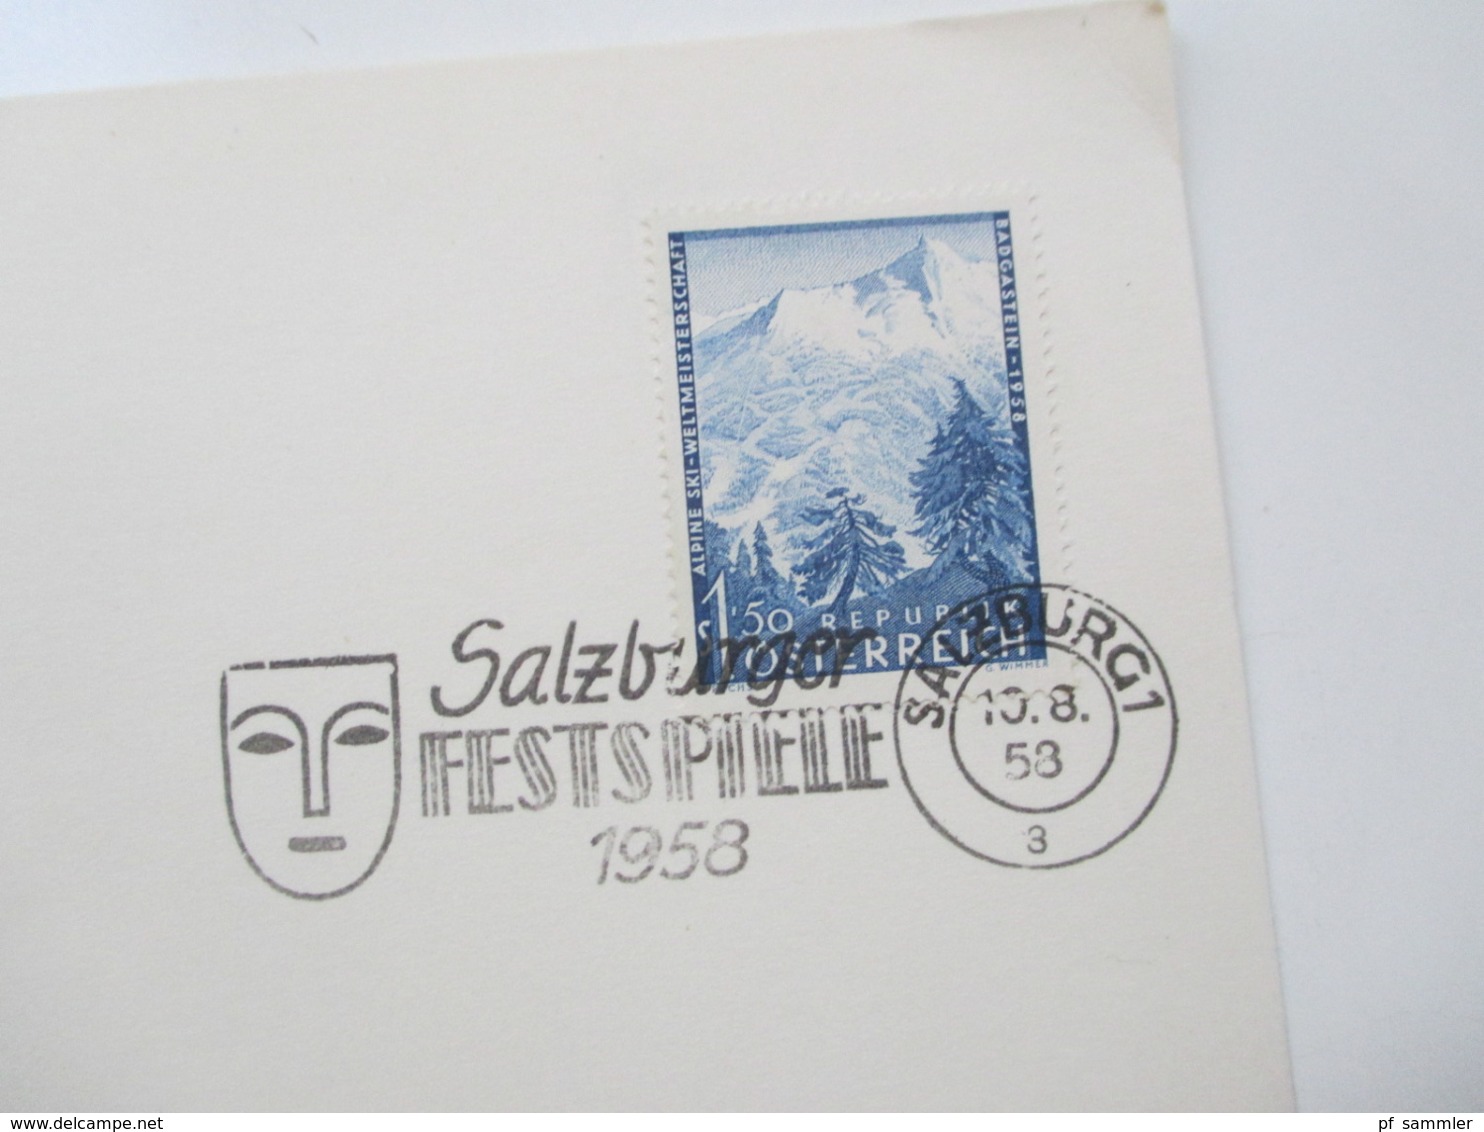 Österreich 2 Klappkarten mit verschiedenen Sondermarken ab 1948 und Stempel Salzburger Festspiele 1958 / SST mit Maske